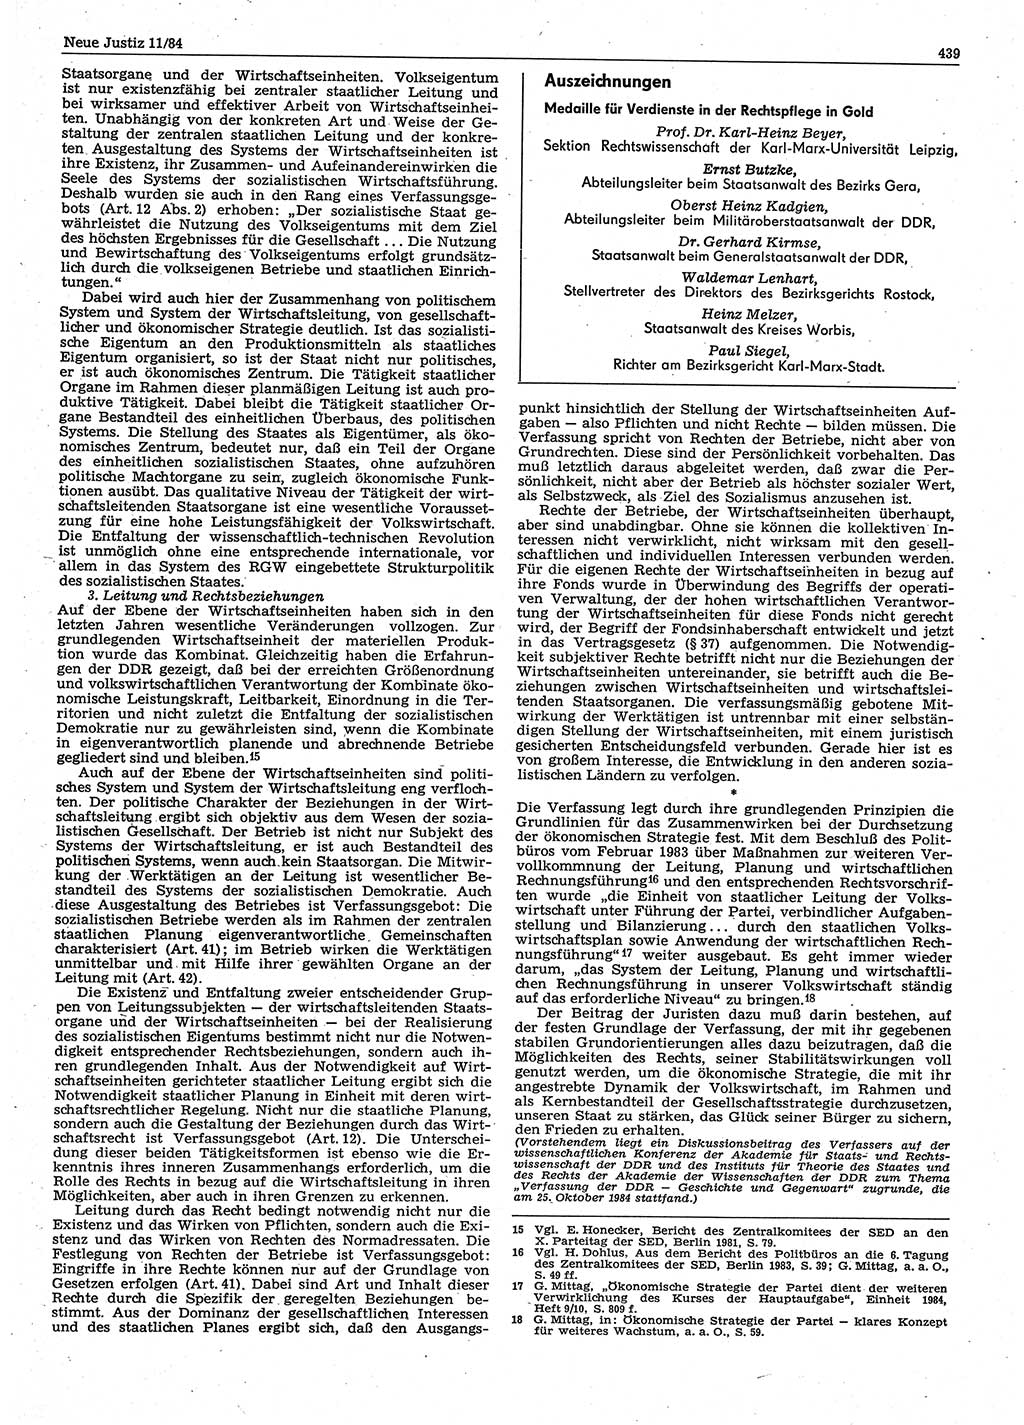 Neue Justiz (NJ), Zeitschrift für sozialistisches Recht und Gesetzlichkeit [Deutsche Demokratische Republik (DDR)], 38. Jahrgang 1984, Seite 439 (NJ DDR 1984, S. 439)